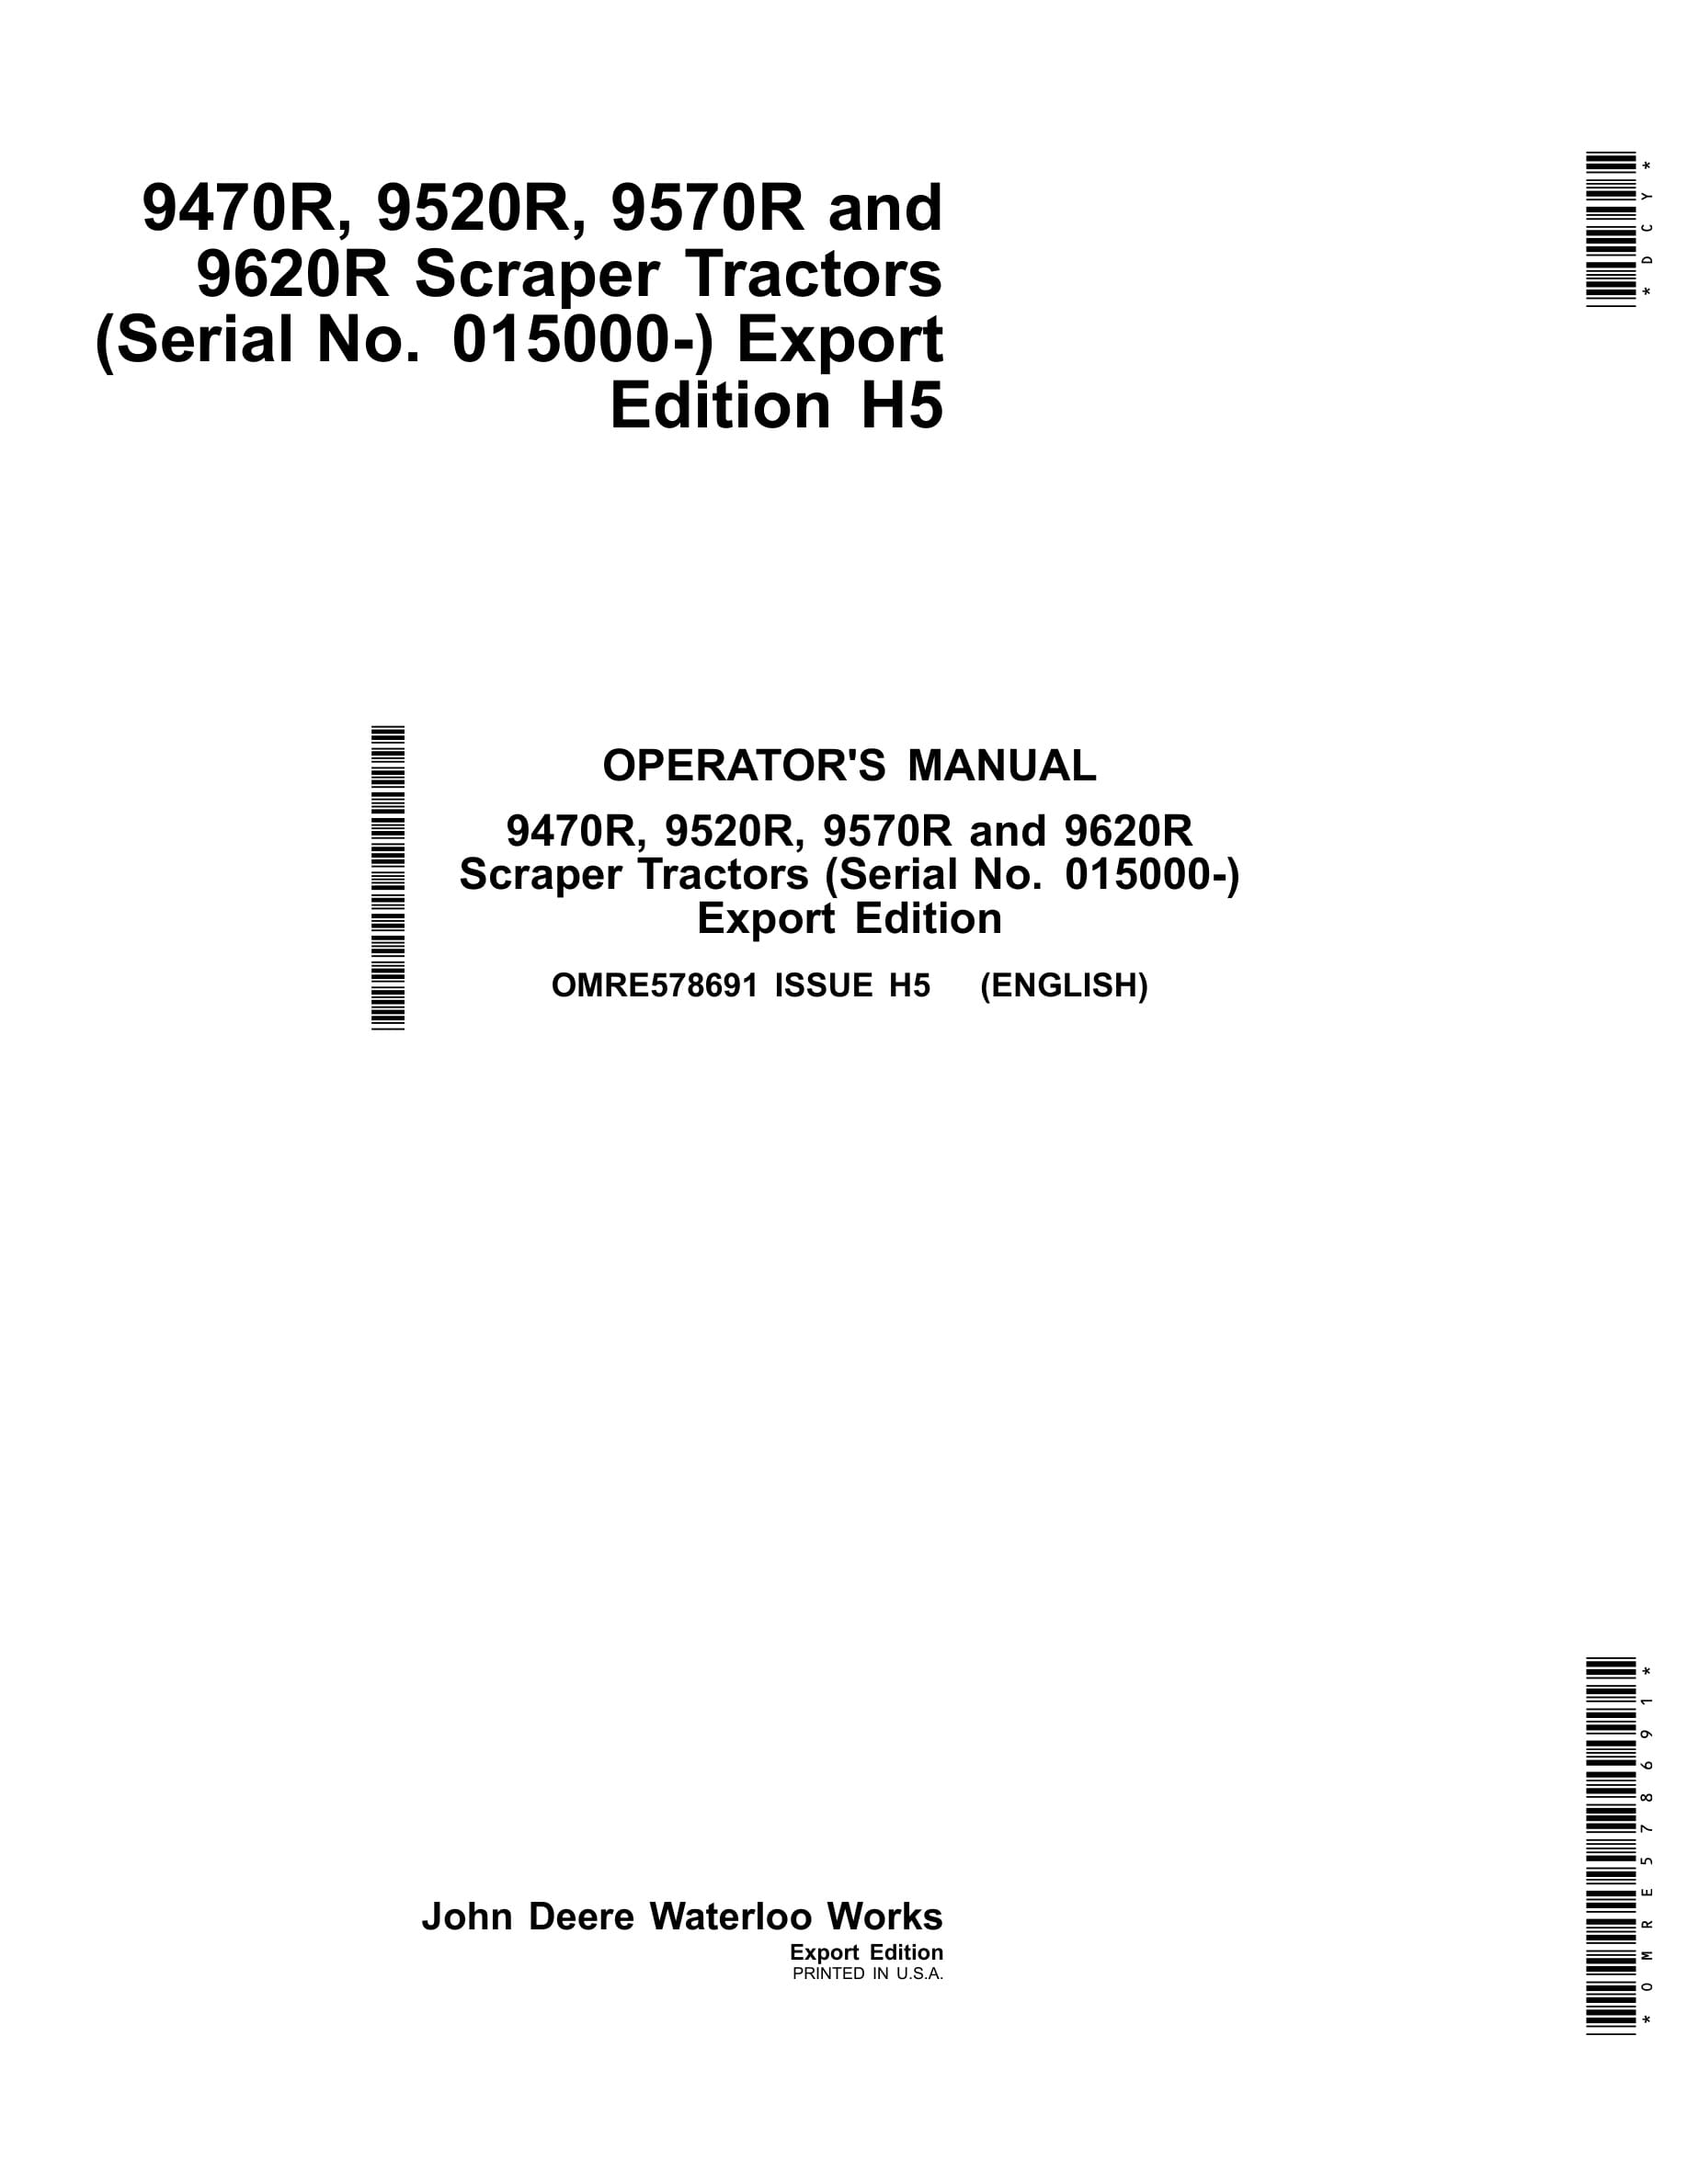 John Deere 9470r, 9520r, 9570r And 9620r Scraper Tractors Operator Manuals OMRE578691-1